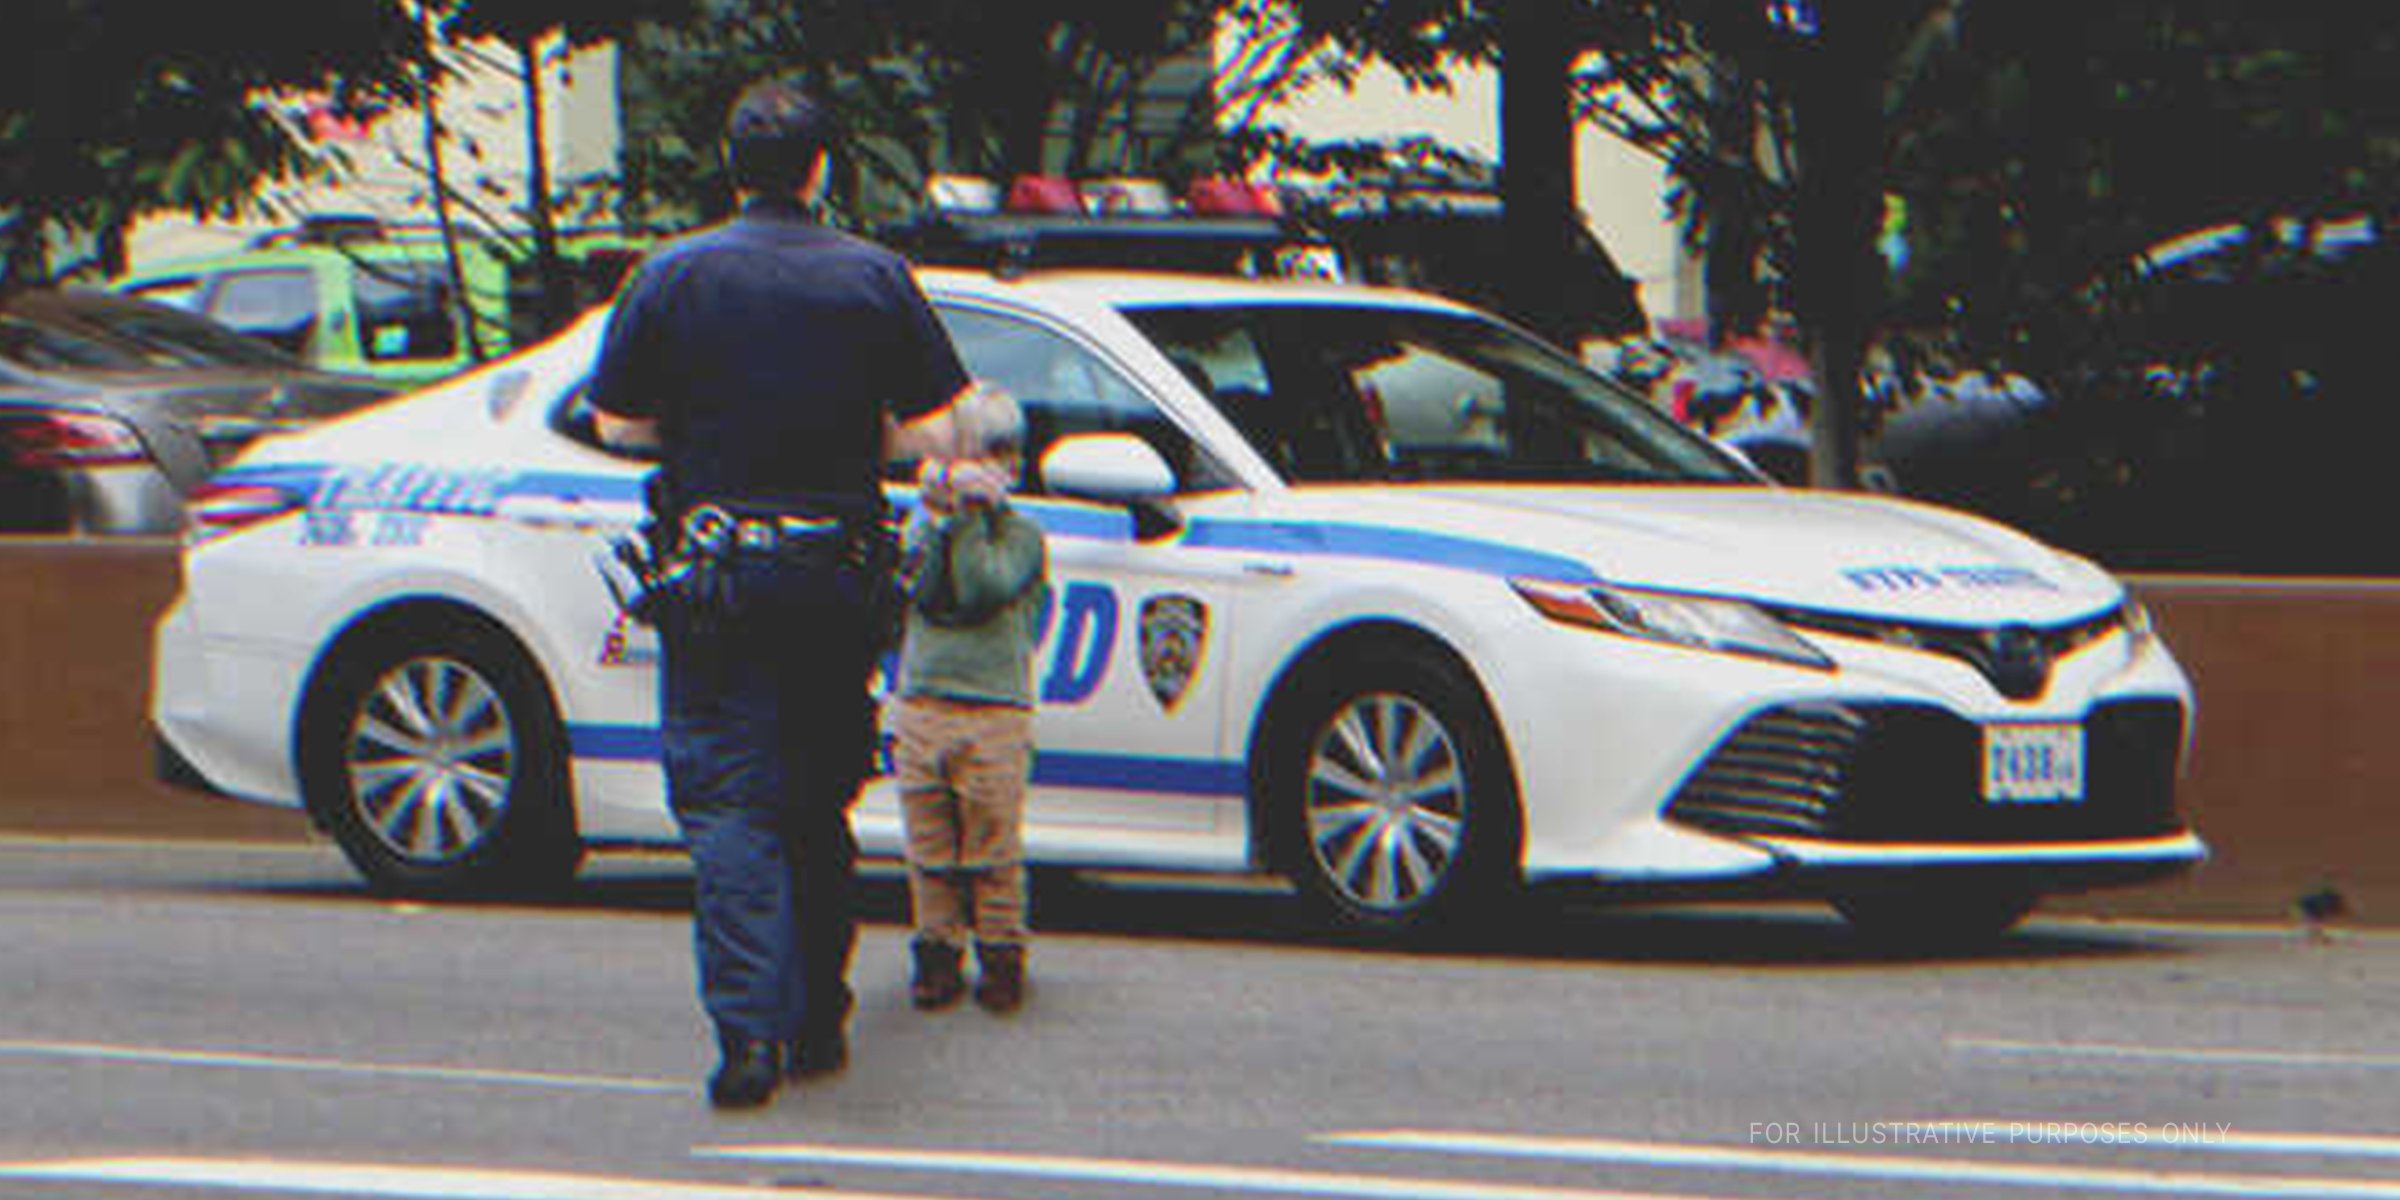 Ein Polizist folgt einem Jungen zum Polizeiauto. | Quelle: Flickr / JLaw45 (CC BY 2.0)